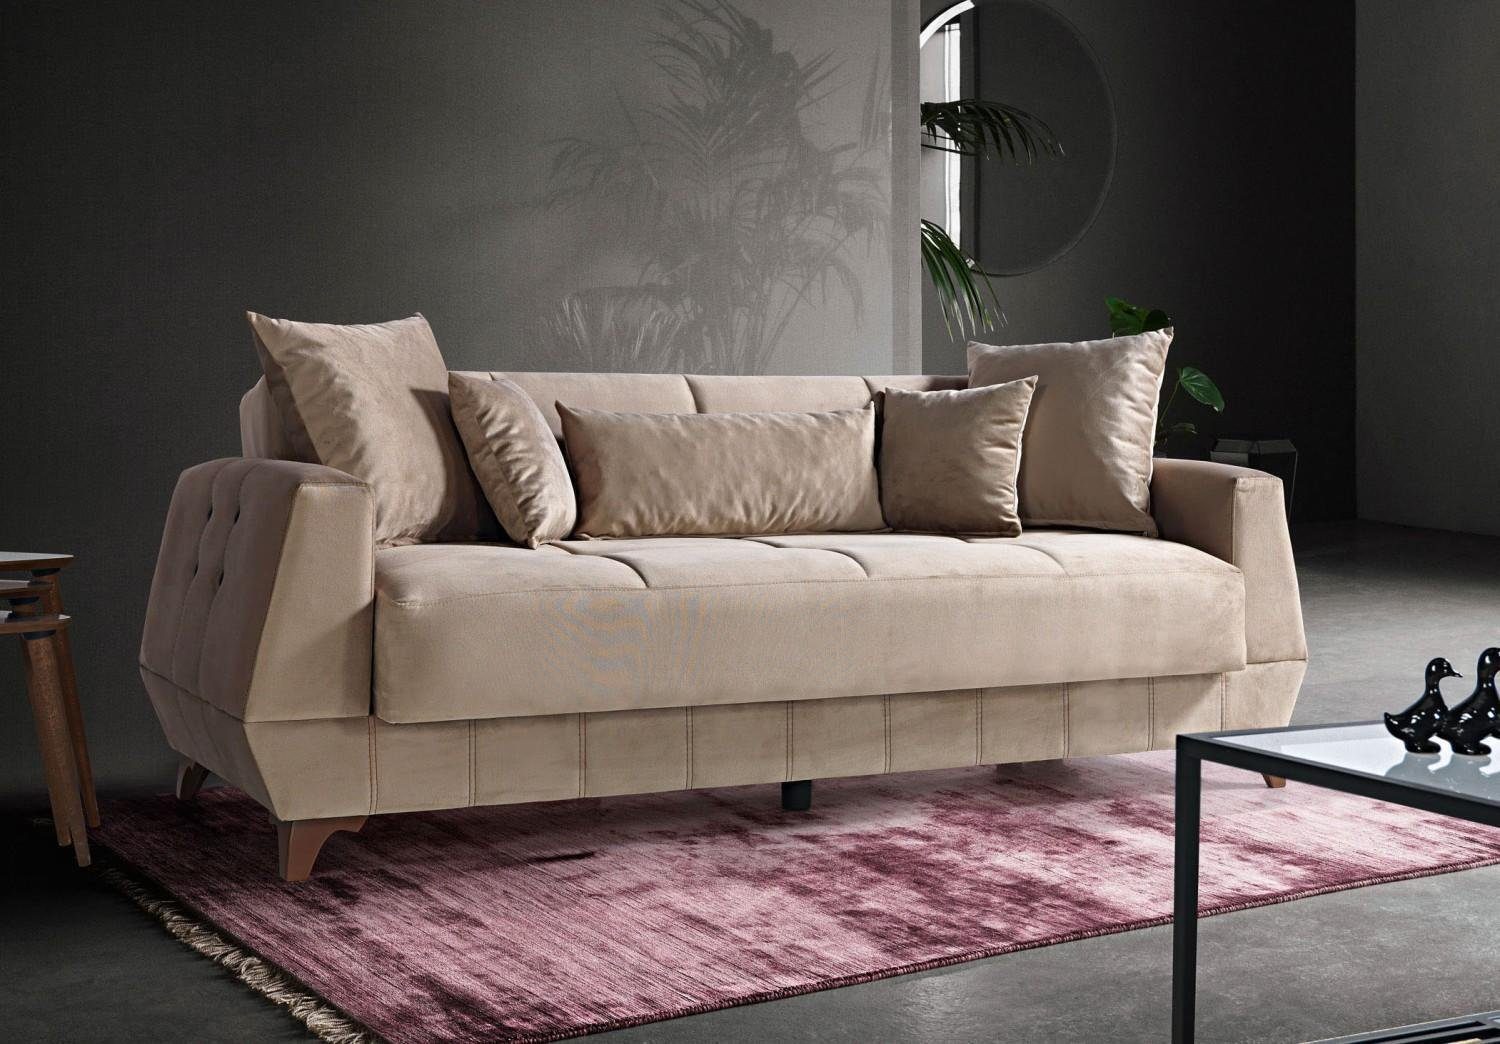 JVmoebel Sofa Design Sofa Dreisitzer Beige Couch Möbel Textil Stoff 3 Sitzer Couchen, Made In Europe